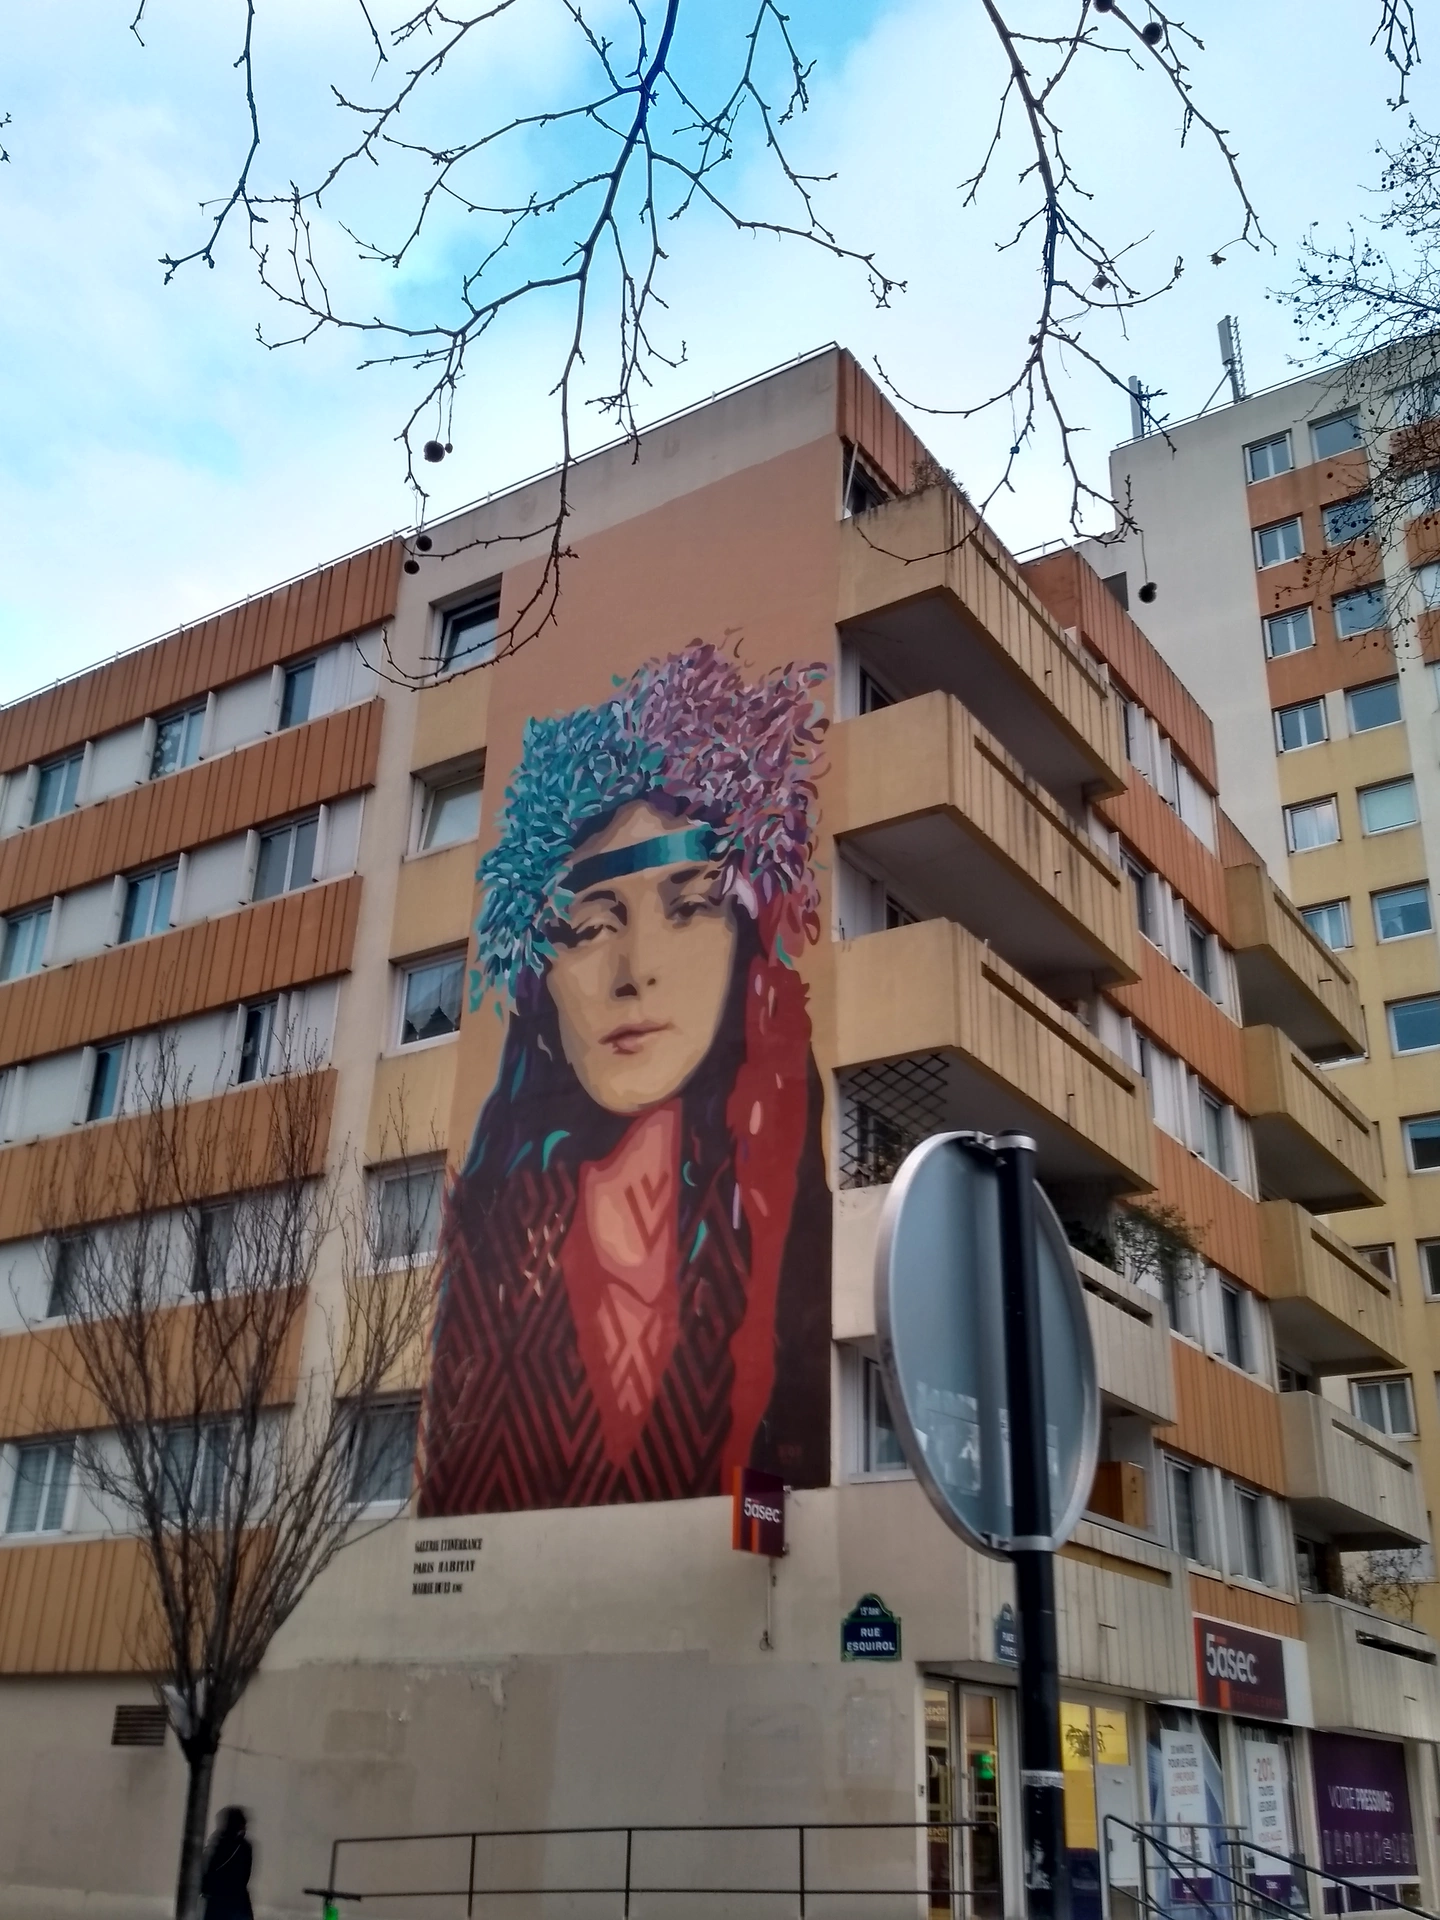 Oeuvre de Street Art réalisée par Btoy à Paris